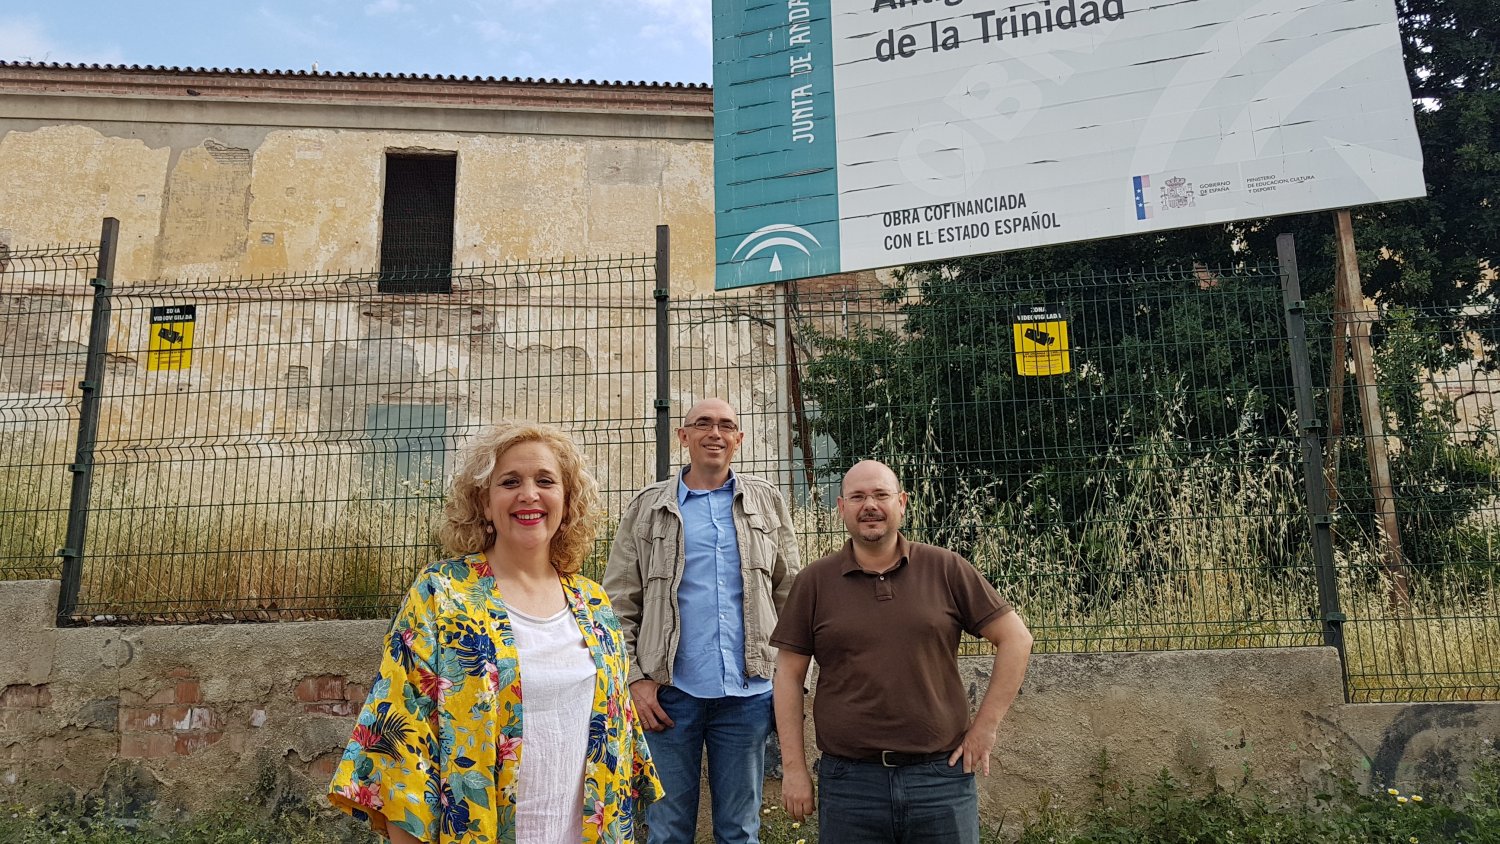 Málaga Para la Gente exige la rehabilitación del antiguo convento de La Trinidad